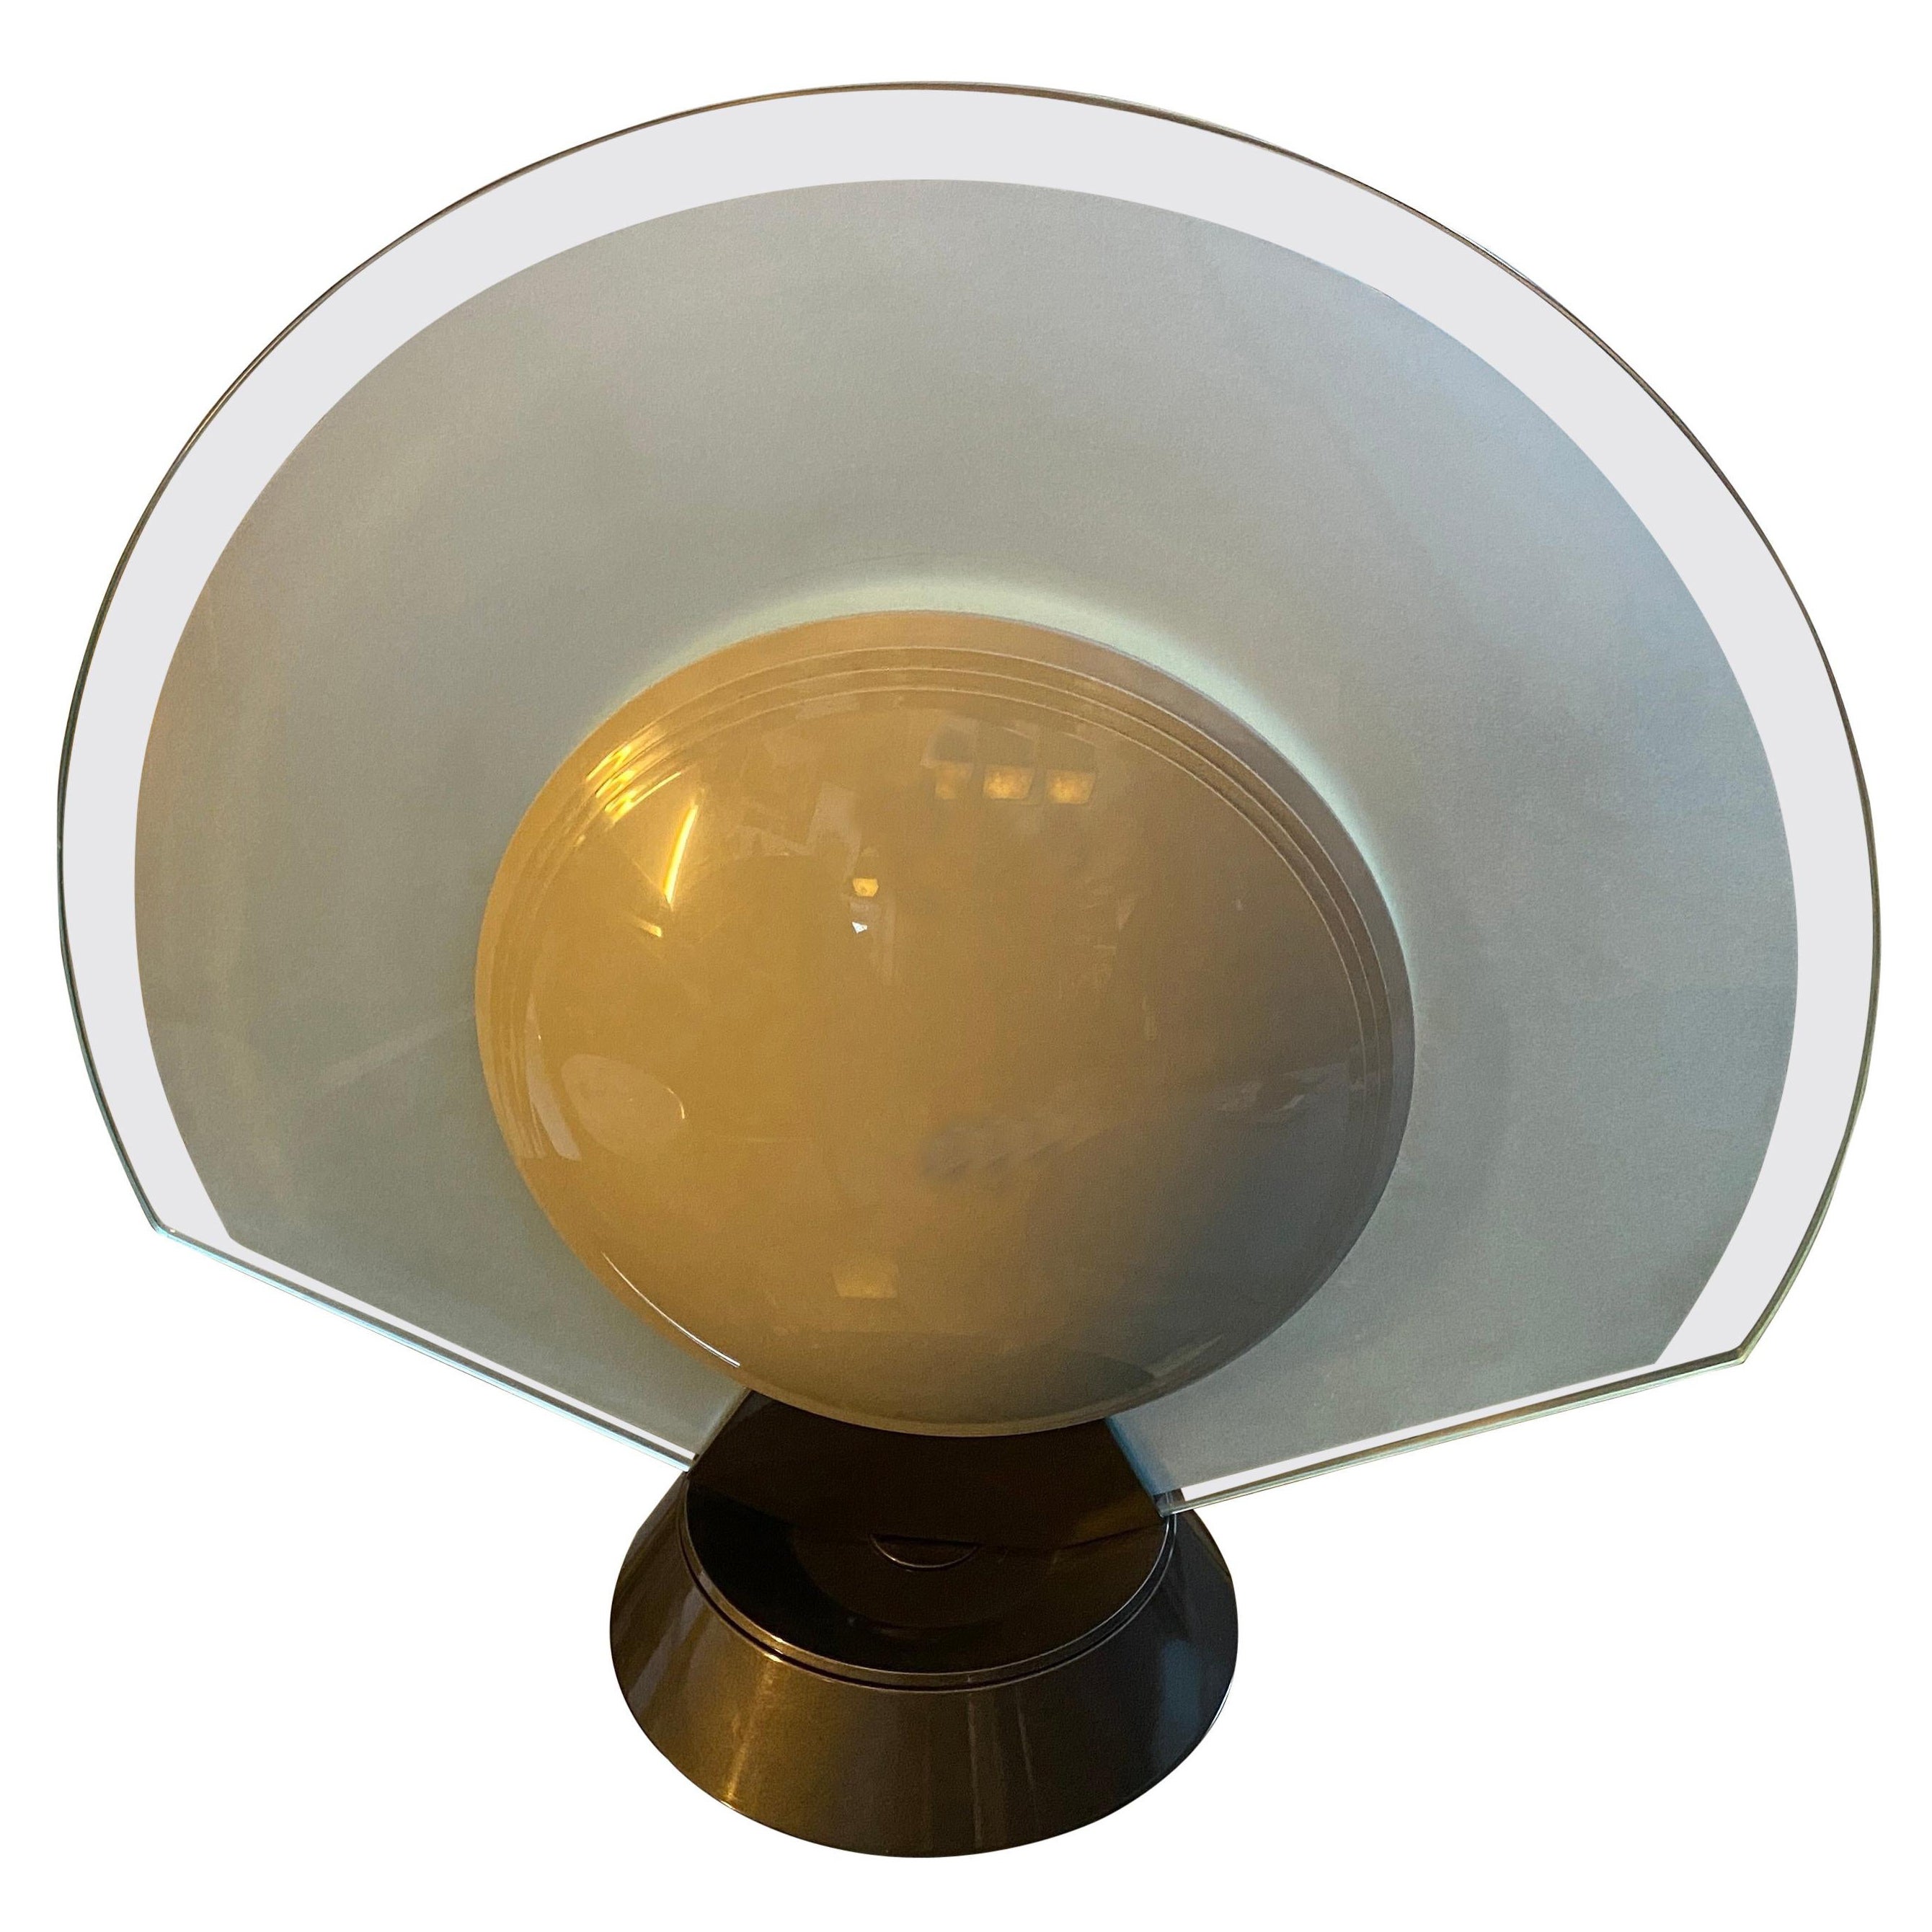 1980s Tikal Turnable Table Lamp Designed by Pier Giuseppe Ramella for Arteluce